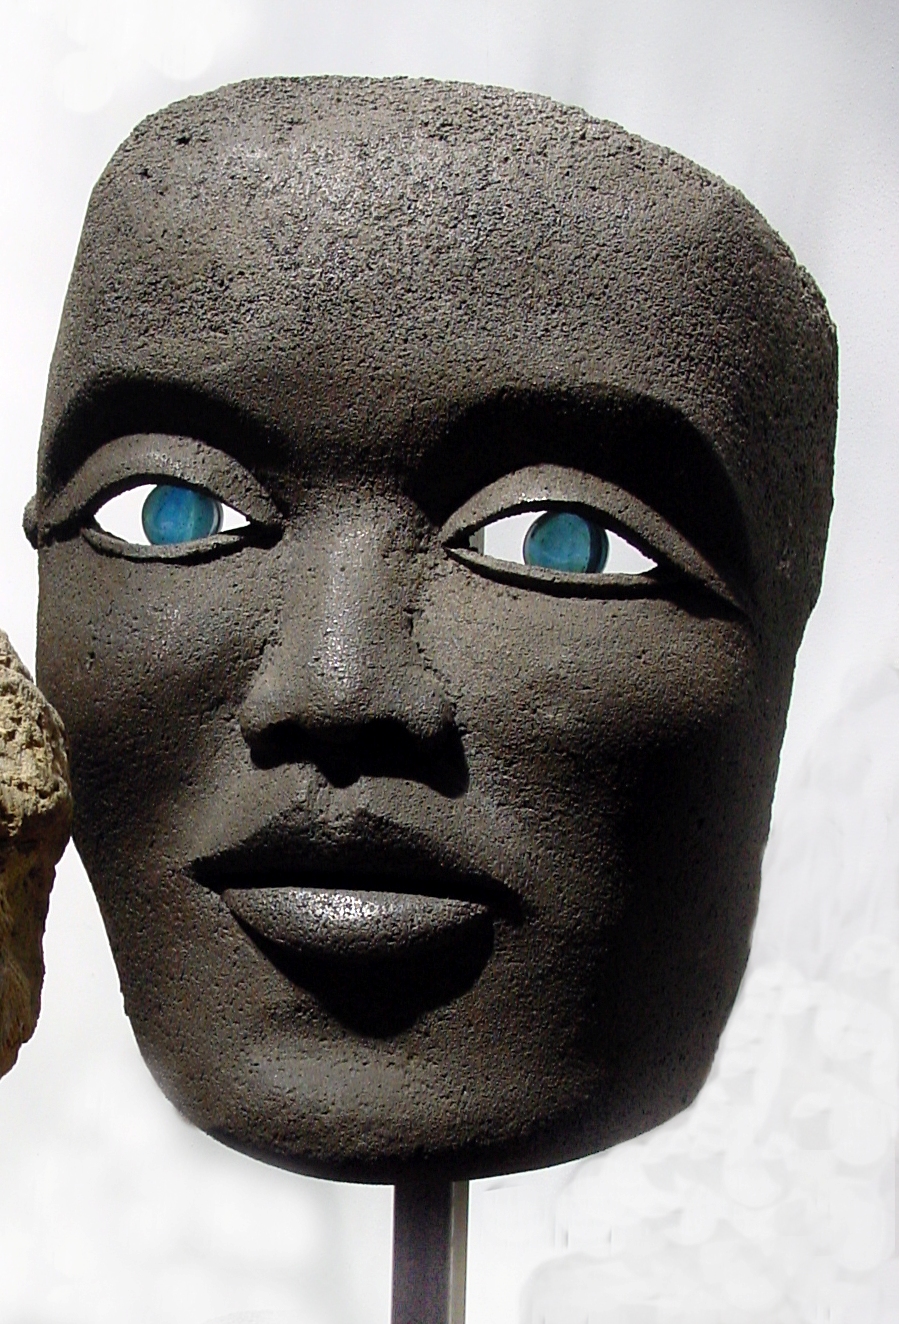 Masque en acier 1 aux yeux bleus sculptures